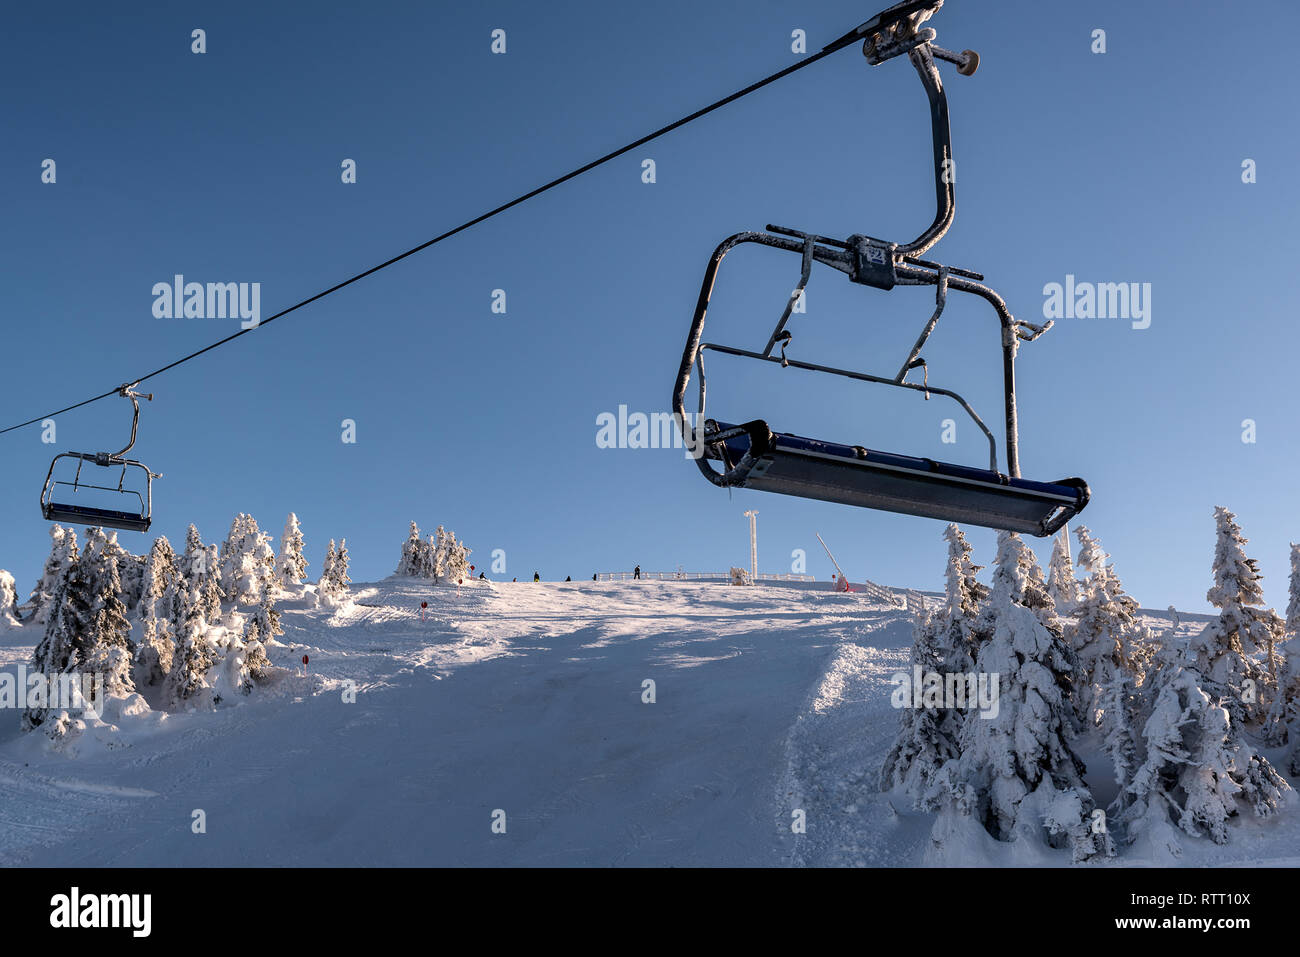 Empty chair ski lift, mountain Kopaonik, Serbia Stock Photo